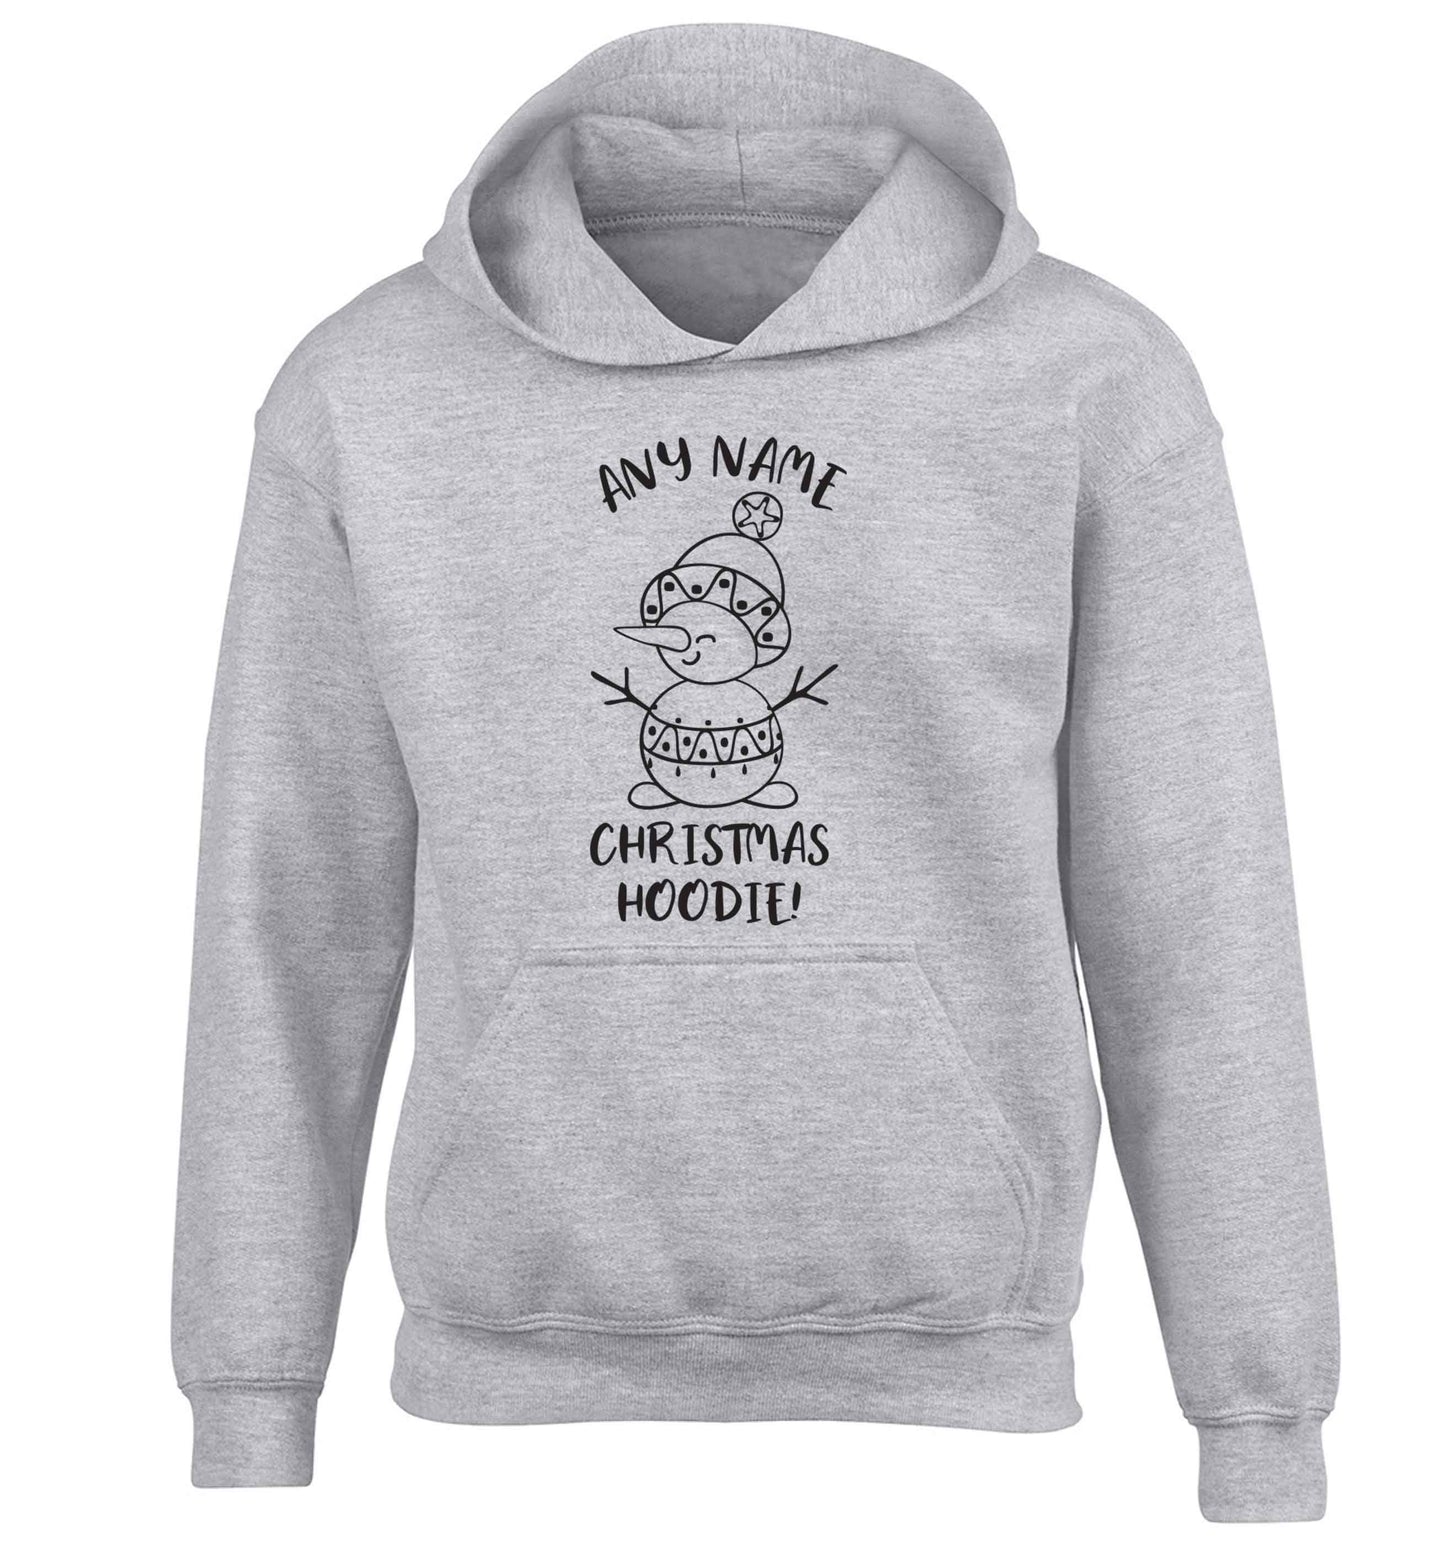 Personalised Christmas hoodie any name children's grey hoodie 12-13 Years